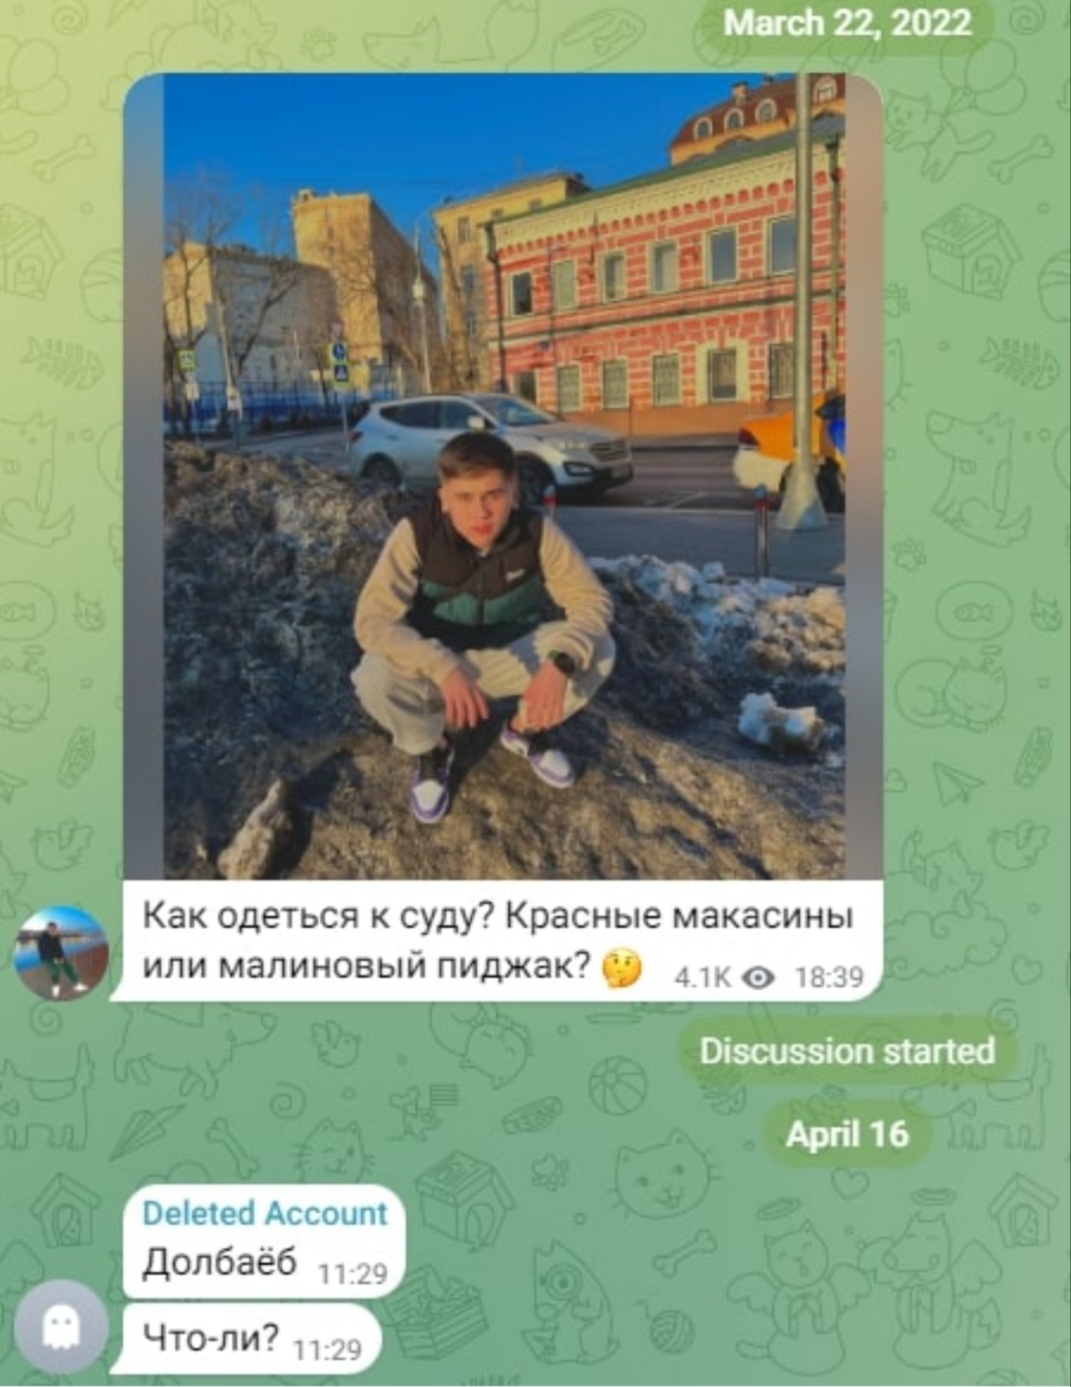 Ганиев Исмаил телеграм